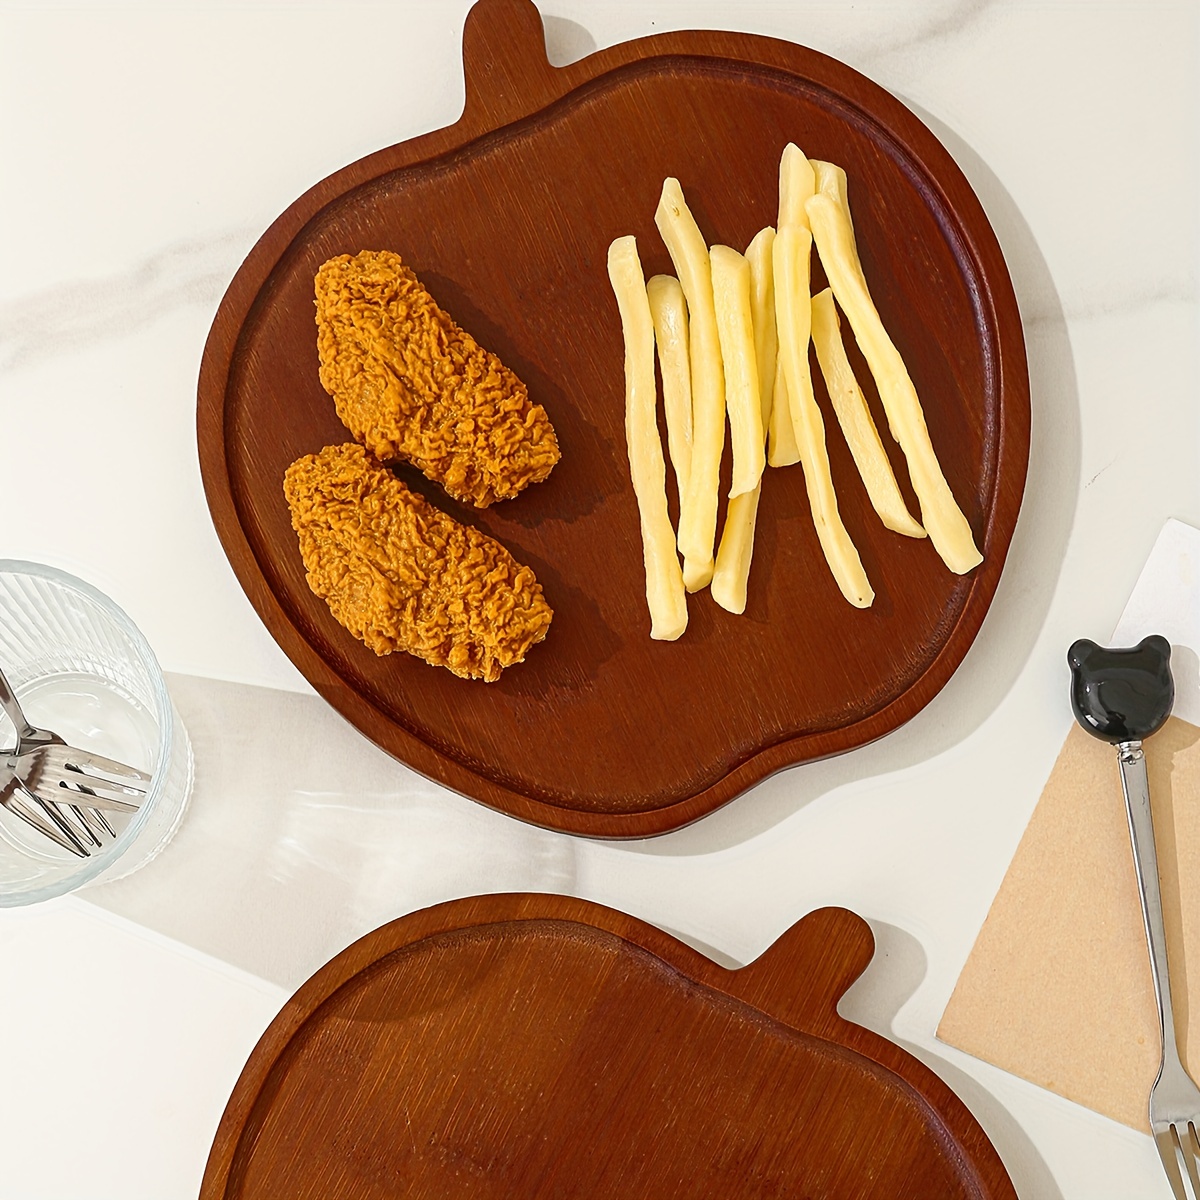 Bandeja de madera para servir de madera, bandejas de servicio rectangulares  con asas, bandeja de madera para servir alimentos para desayuno, cena, té